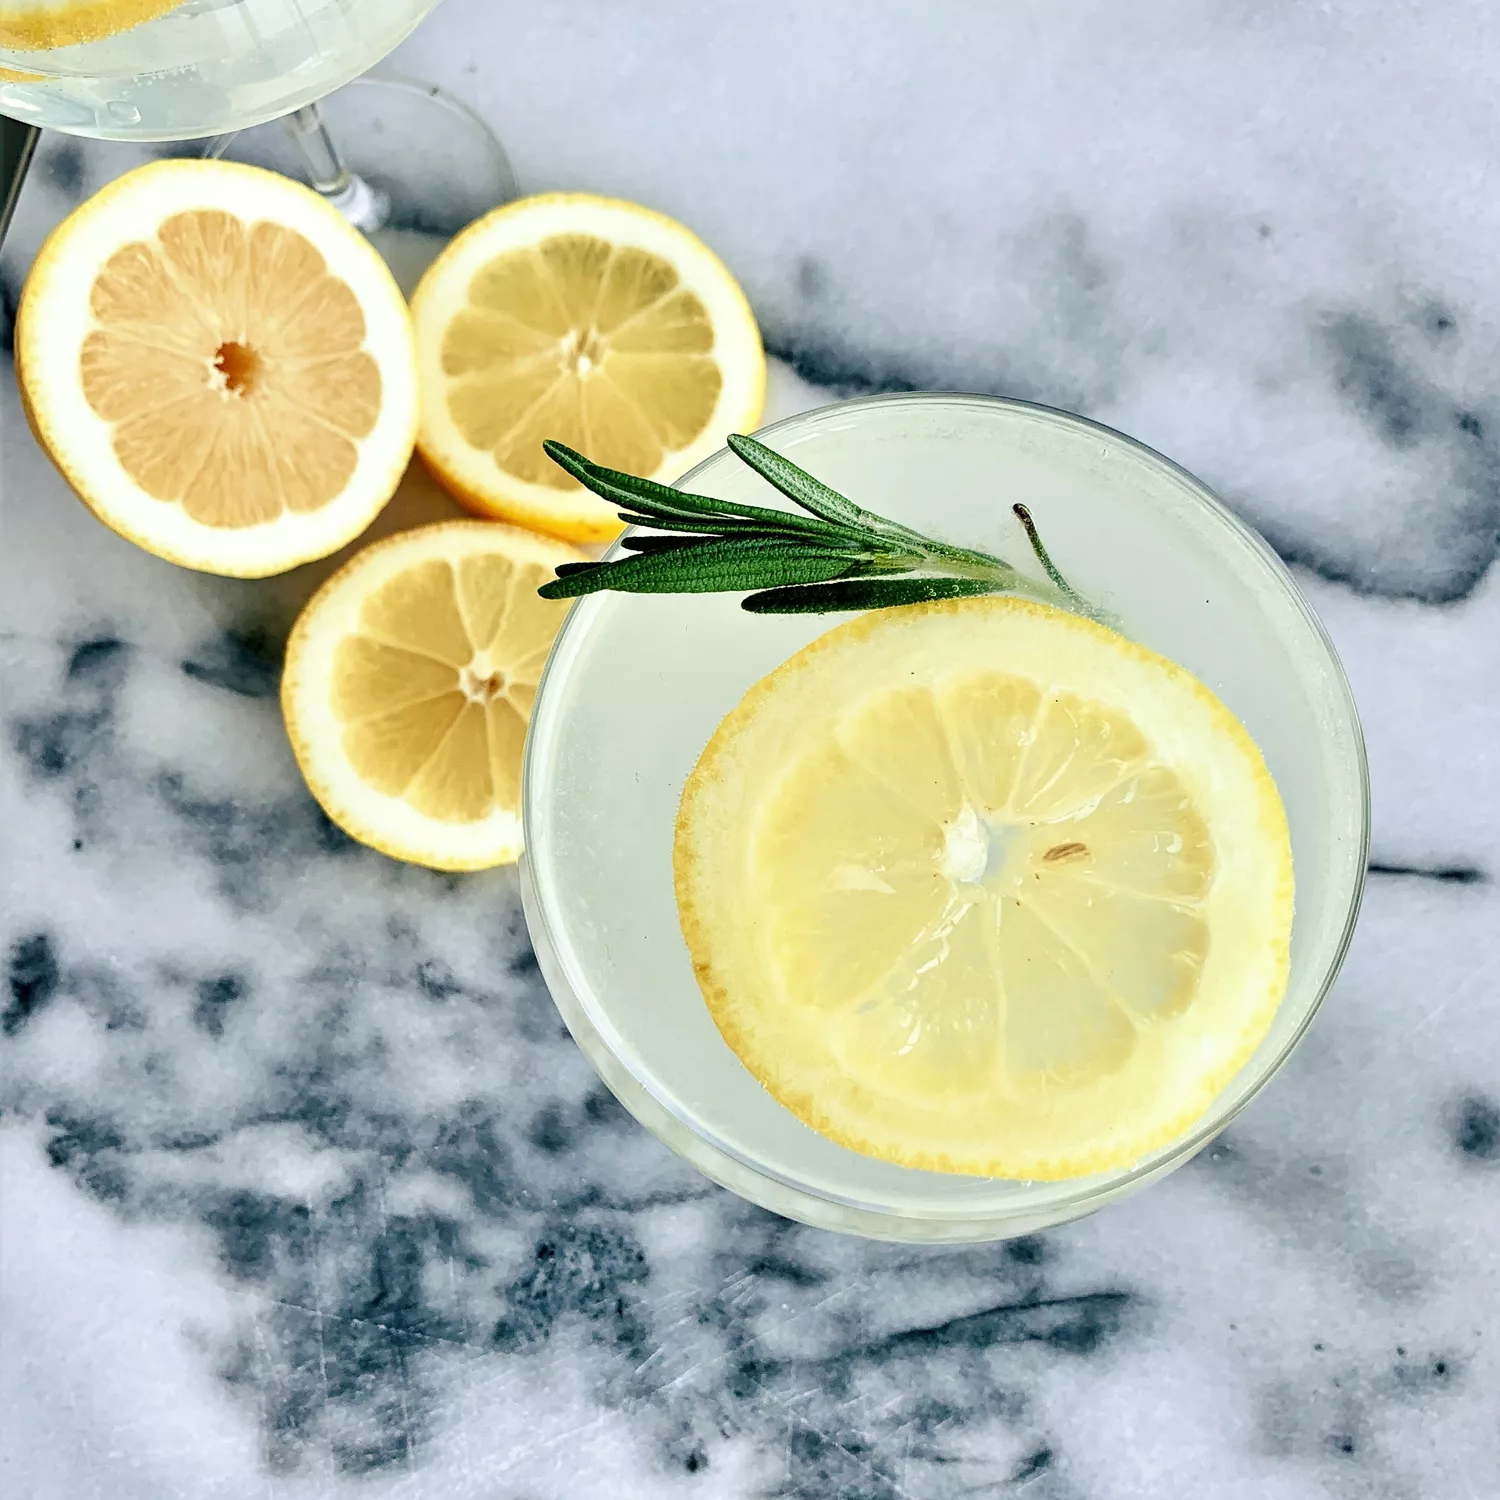 Spritz　Lemon　Gin　Cocktail　La　Recipe　Sur　Table